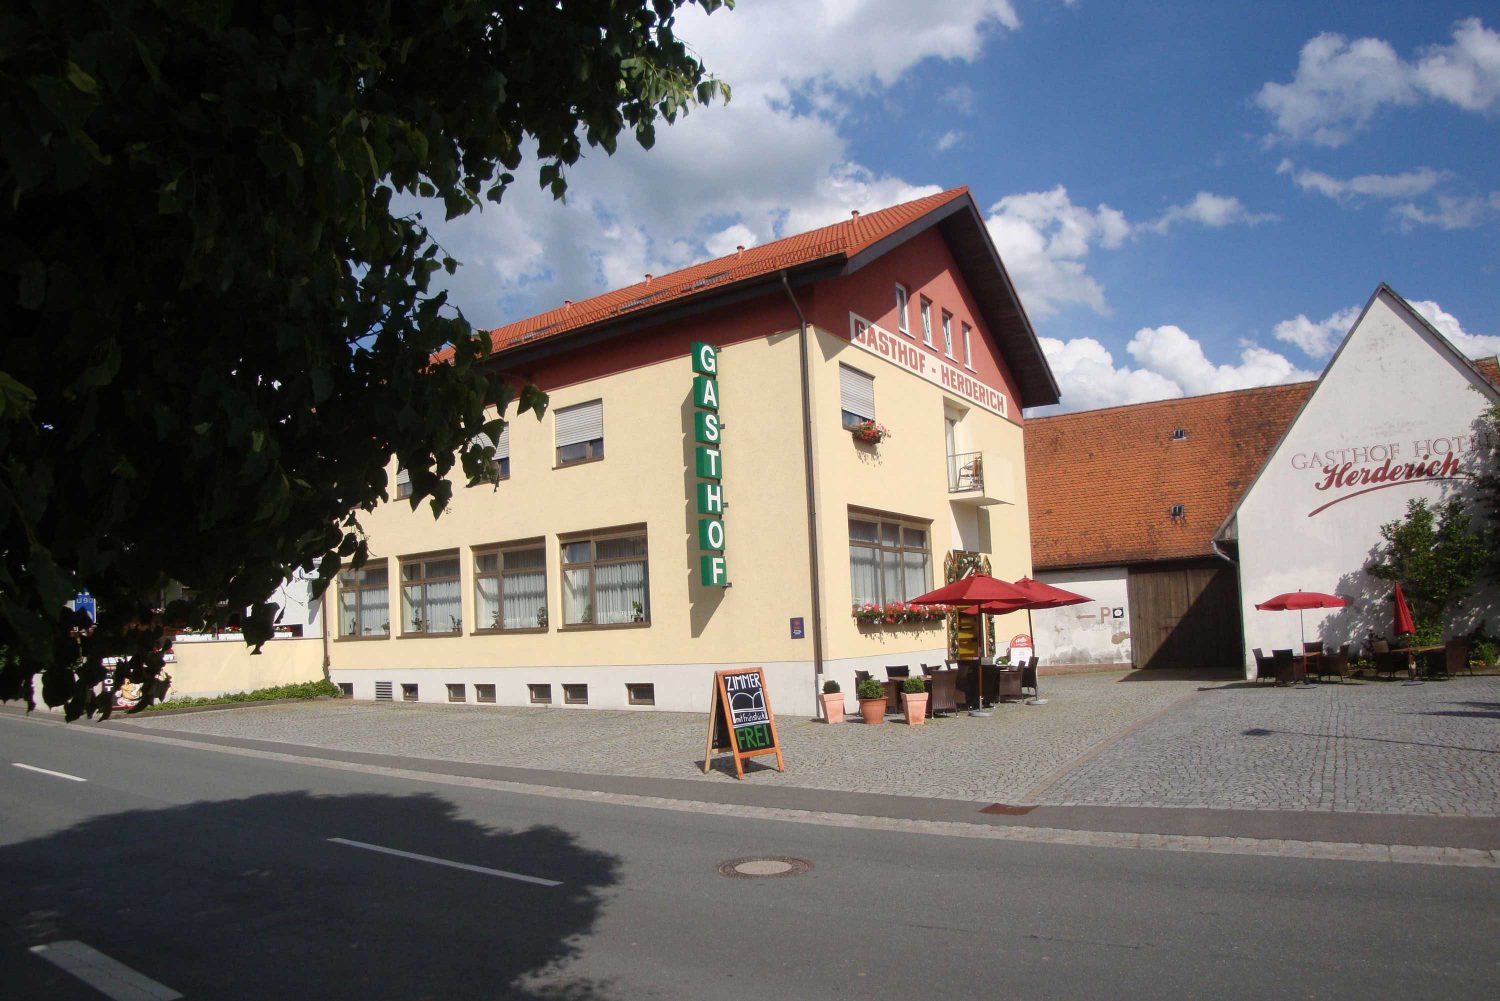 Pension Gaststätte Herderich in Attelsdorf bei Schlüsselfeld